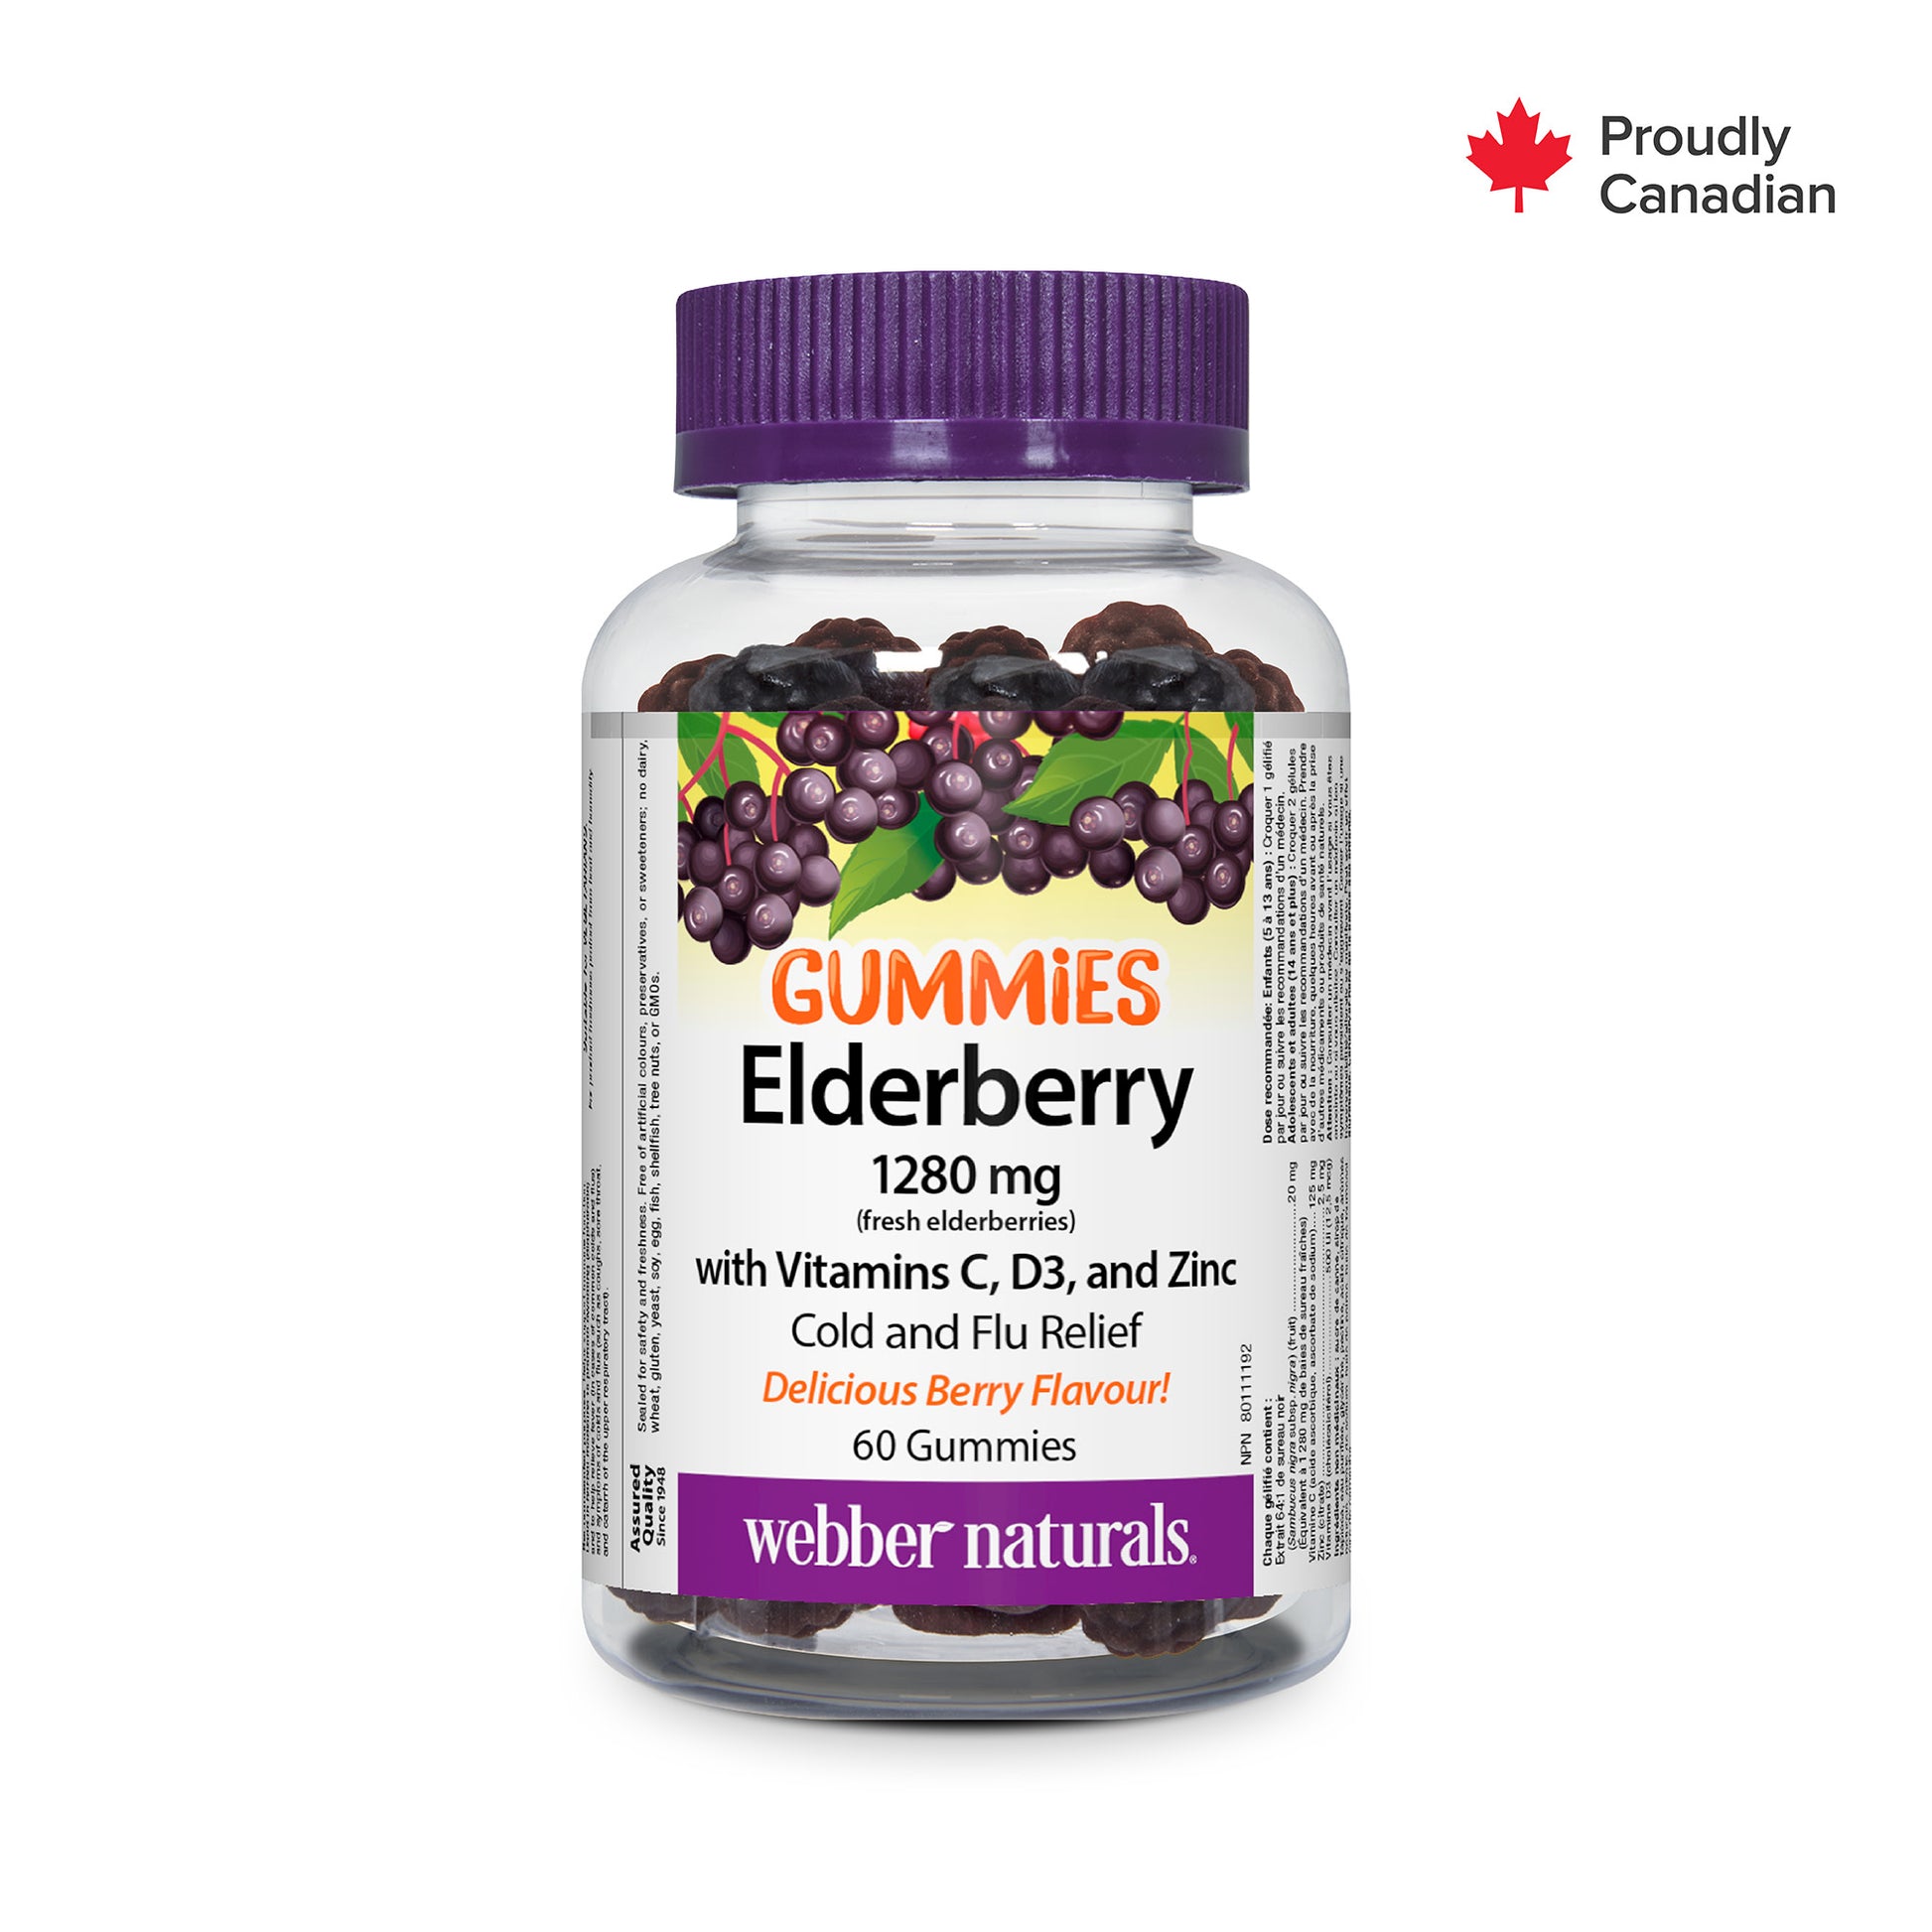 Elderberry Gummies with Vitamins C, D3, and Zinc for Webber Naturals|v|hi-res|WN3900